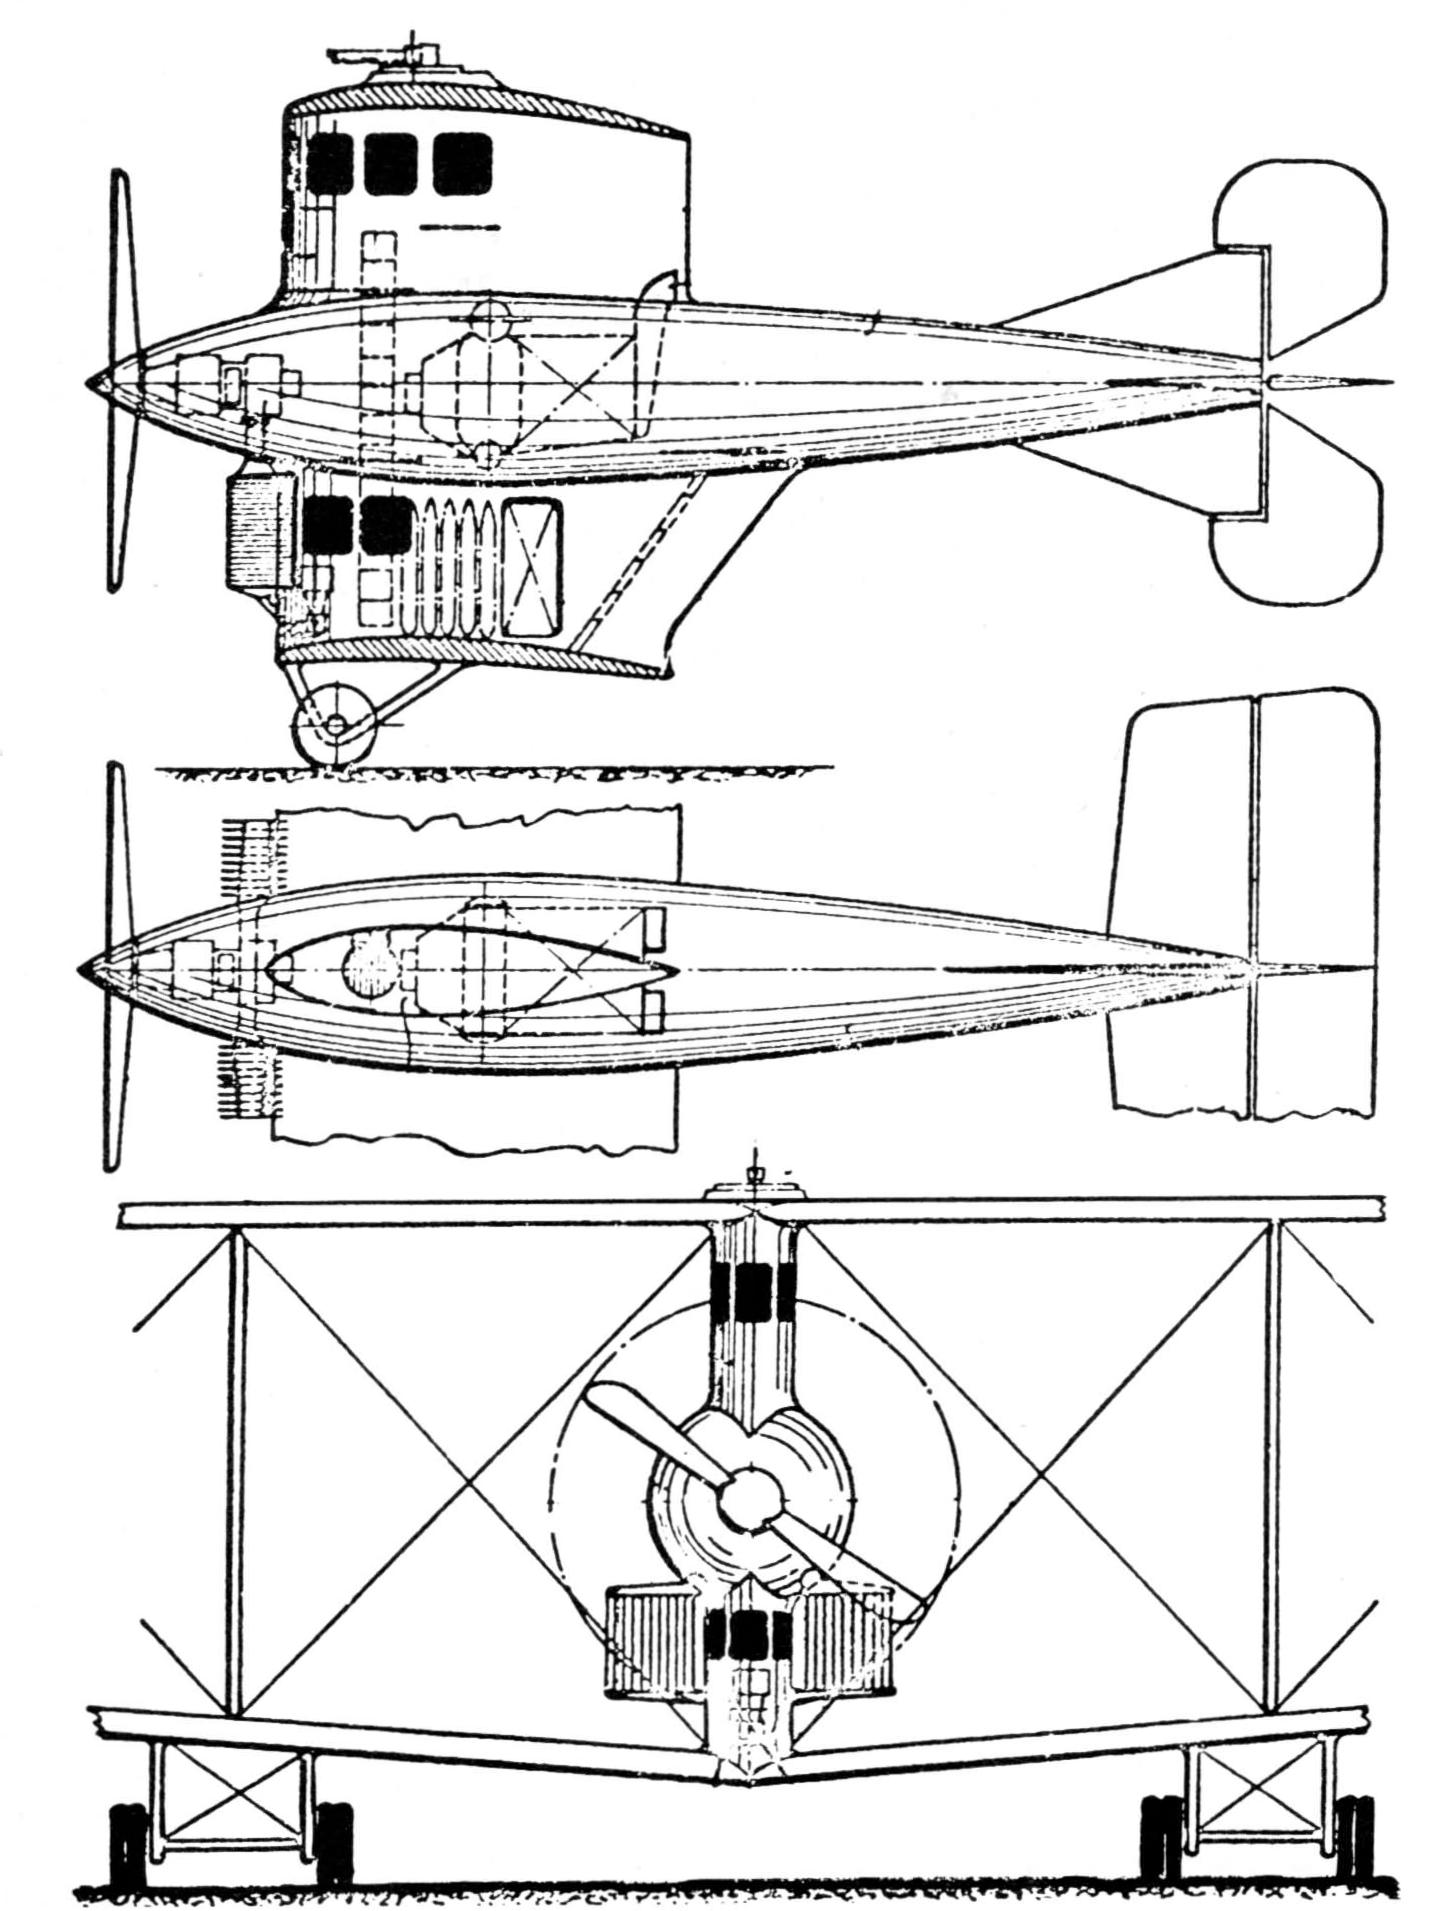 Проект бомбардировщика R-класса образца 1917 года с паротурбинной силовой установкой Рудольфа фон Вагнера